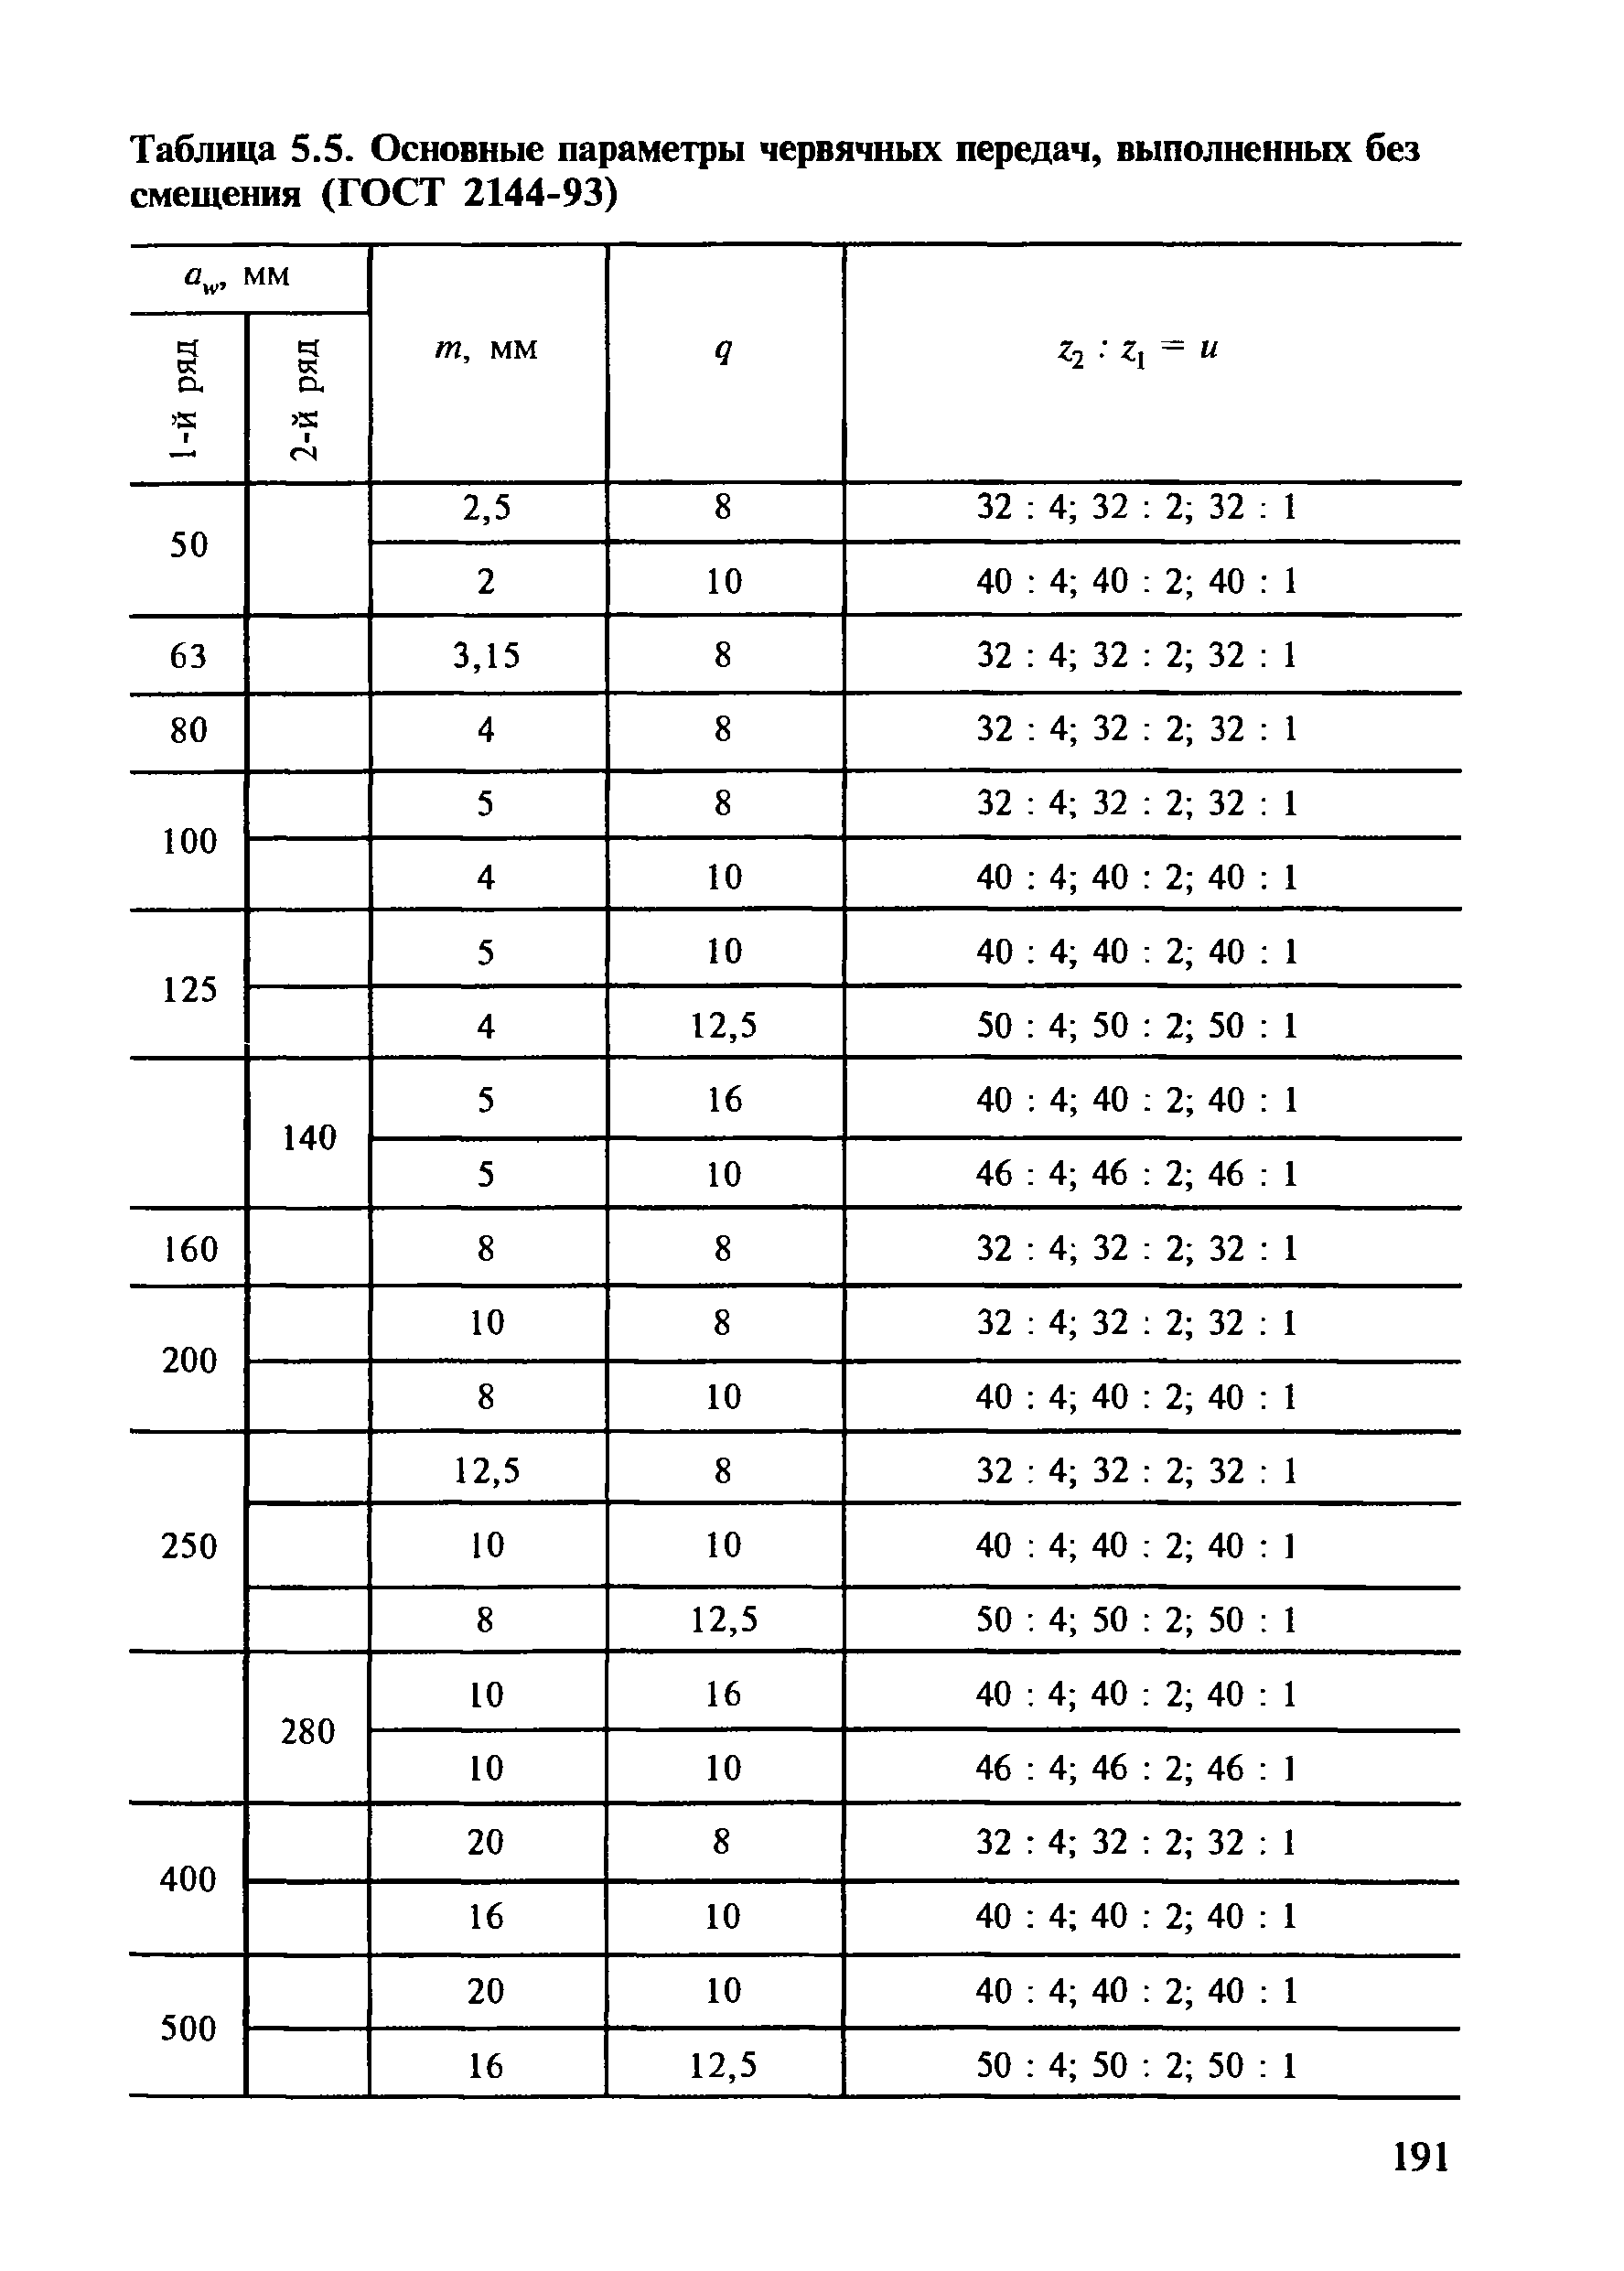 Таблица 5.5. Основные параметры червячных передач, выполненных без смещения (ГОСТ 2144-93)
